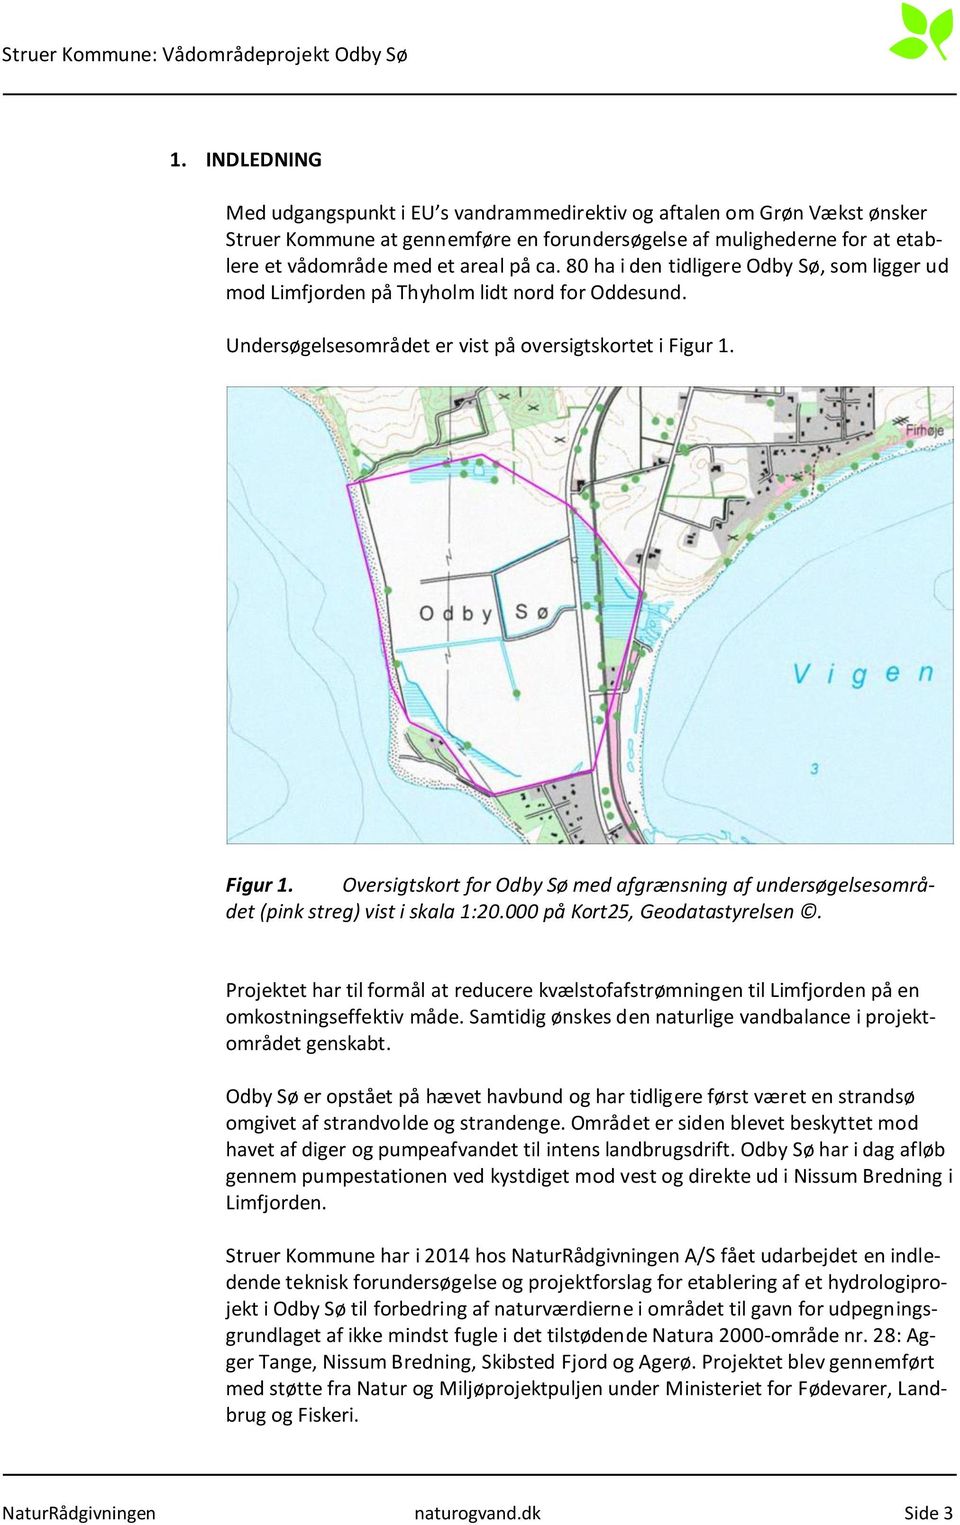 Figur 1. Oversigtskort for Odby Sø med afgrænsning af undersøgelsesområdet (pink streg) vist i skala 1:20.000 på Kort25, Geodatastyrelsen.